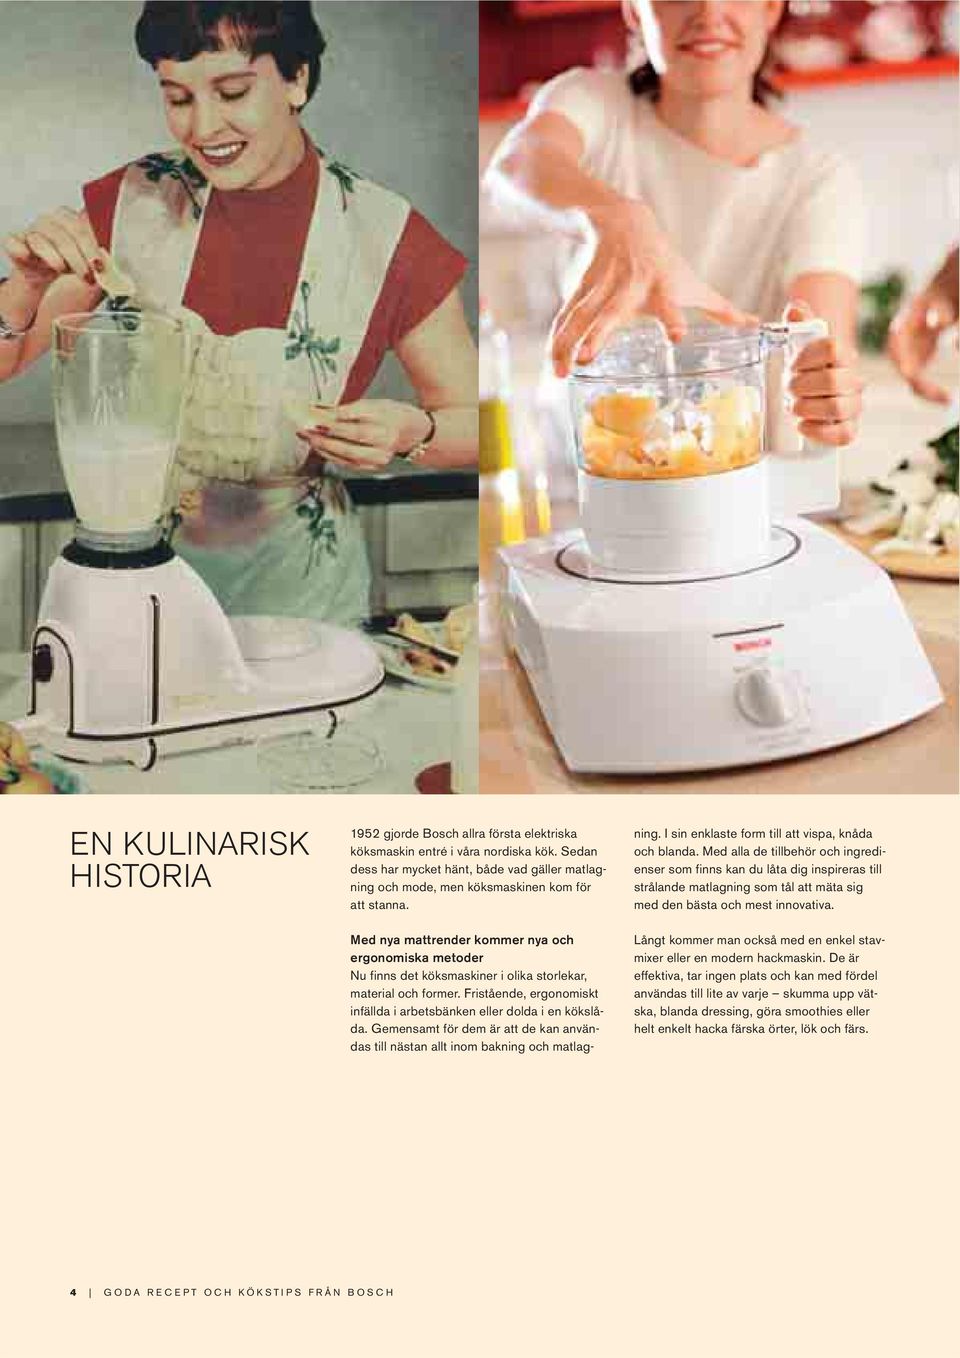 Med nya mattrender kommer nya och ergonomiska metoder Nu finns det köksmaskiner i olika storlekar, material och former. Fristående, ergonomiskt infällda i arbetsbänken eller dolda i en kökslåda.